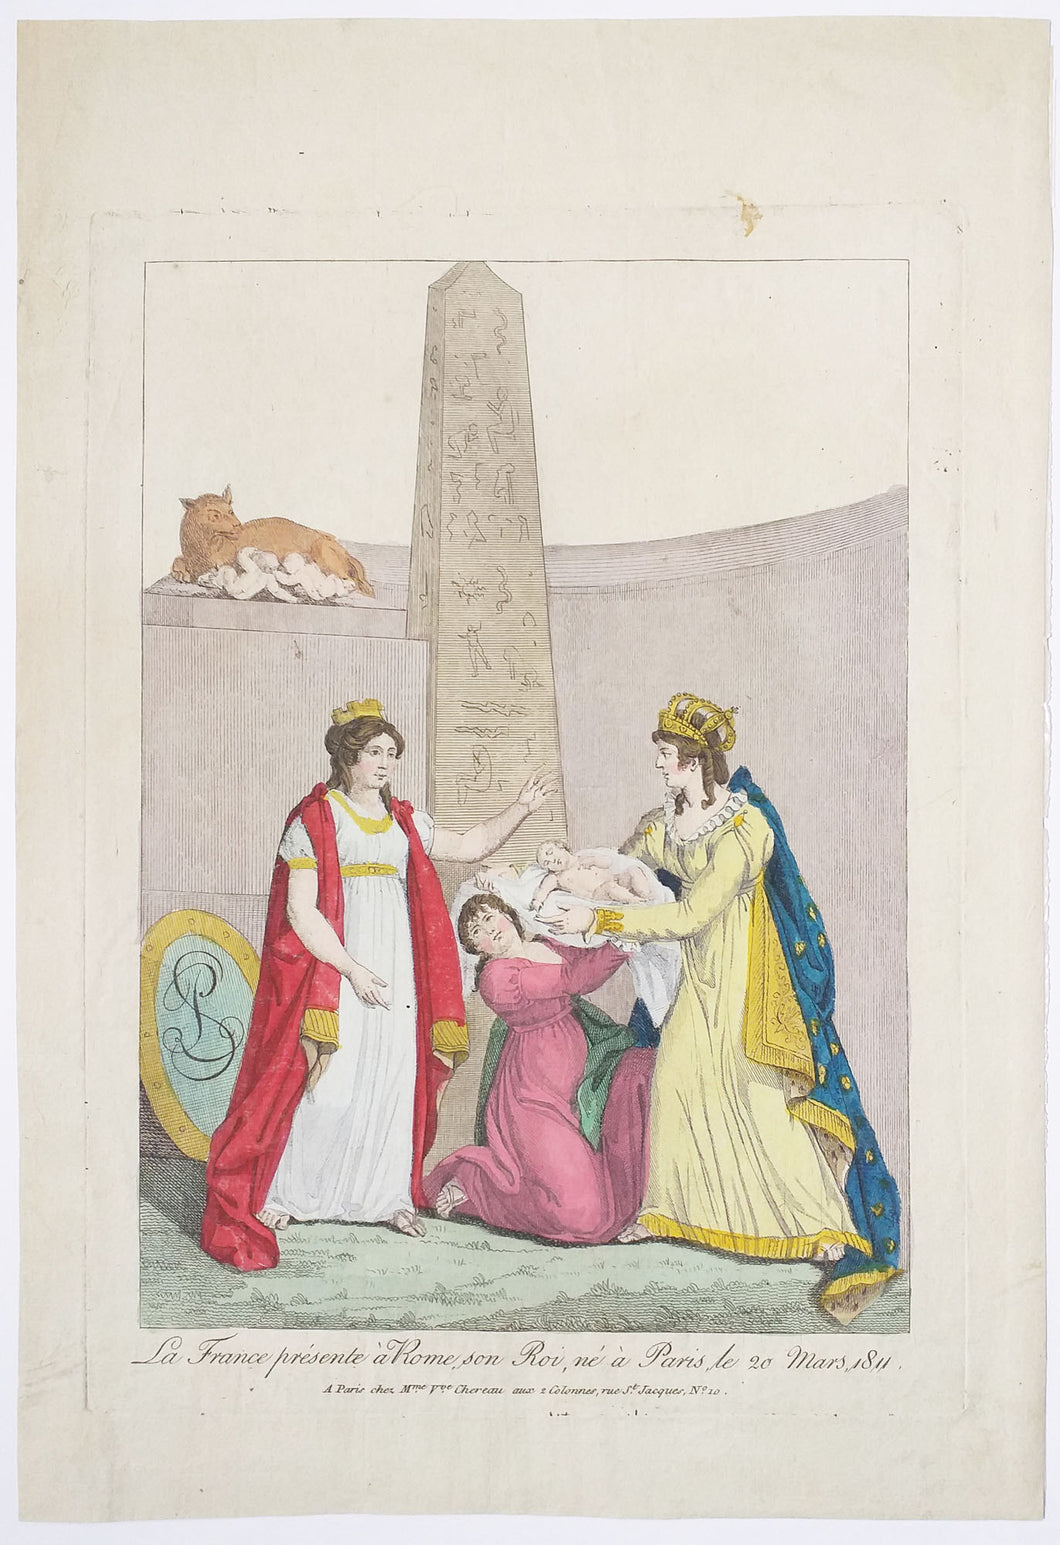 La France présente à Rome, son Roi, né à Paris, le 20 mars 1811.